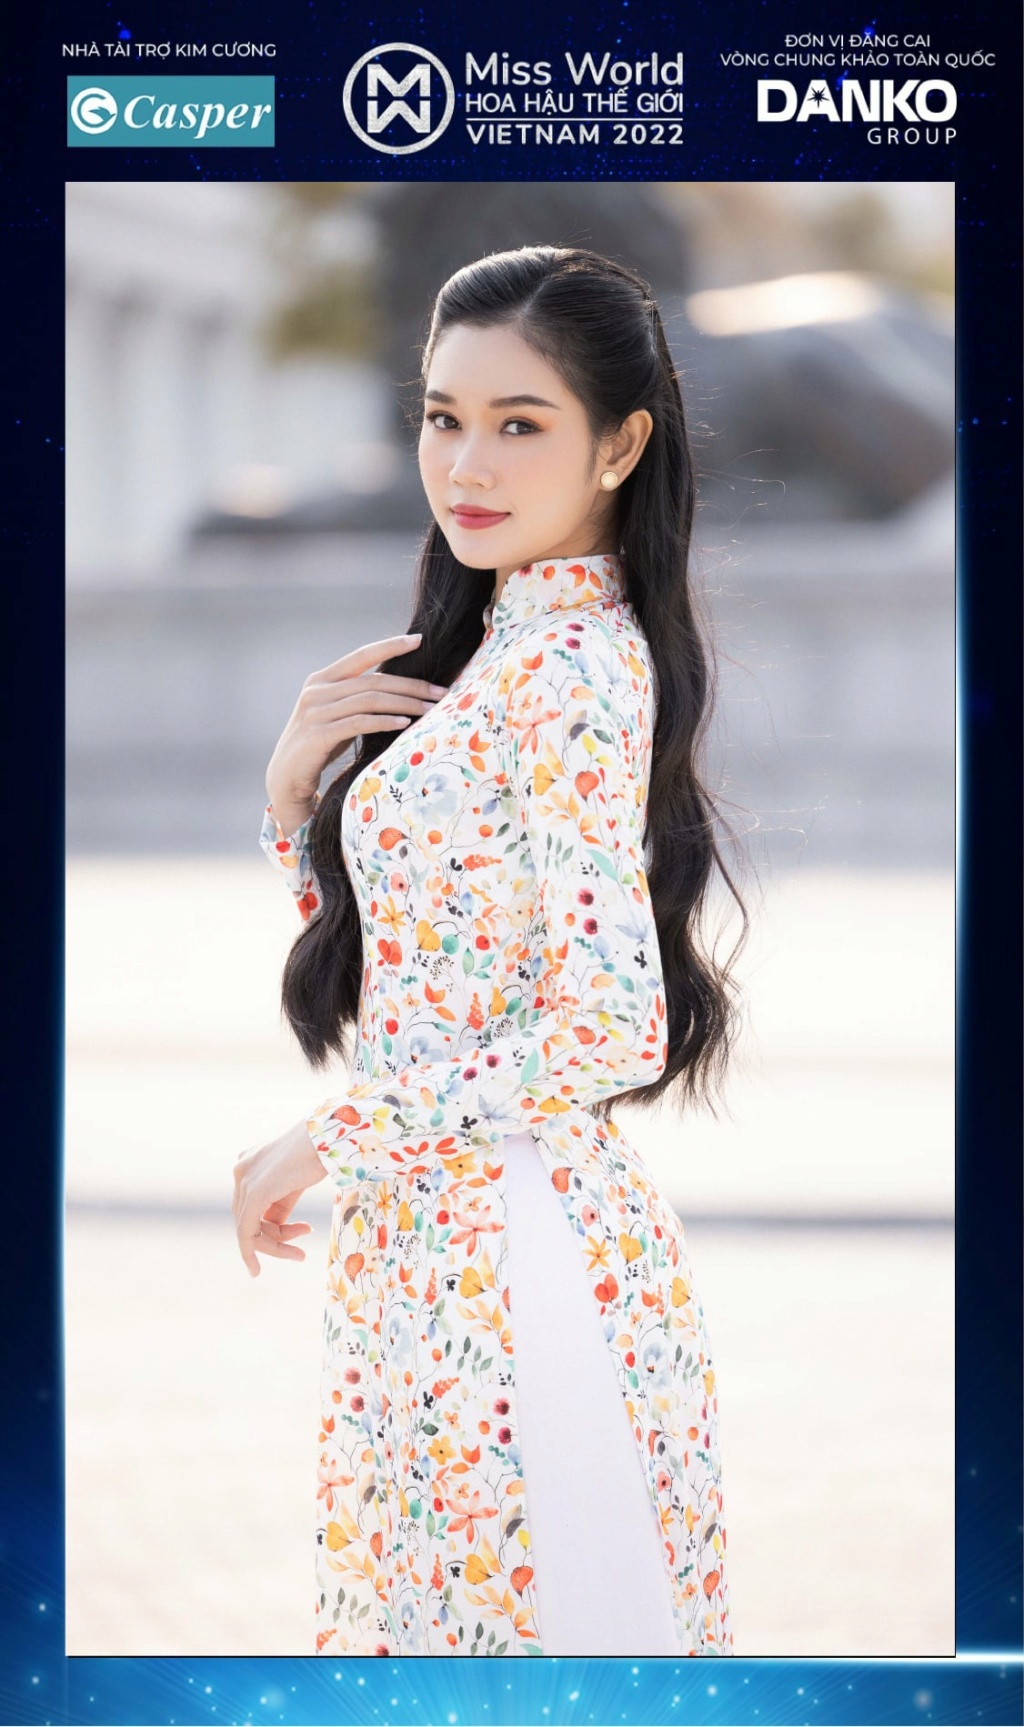 Miss World Vietnam 2022 27915310